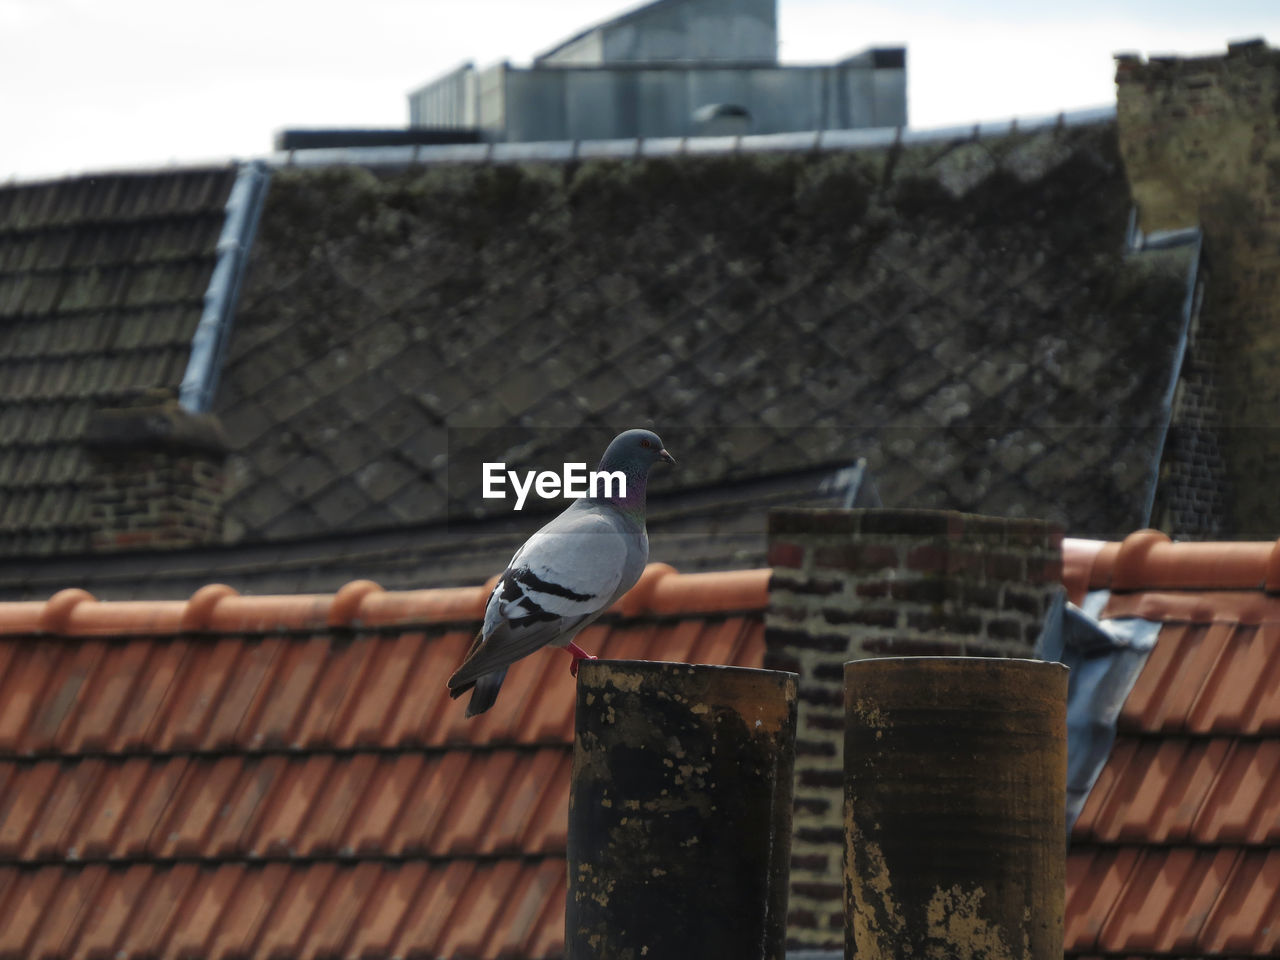 Pigeon perching on smoke stack